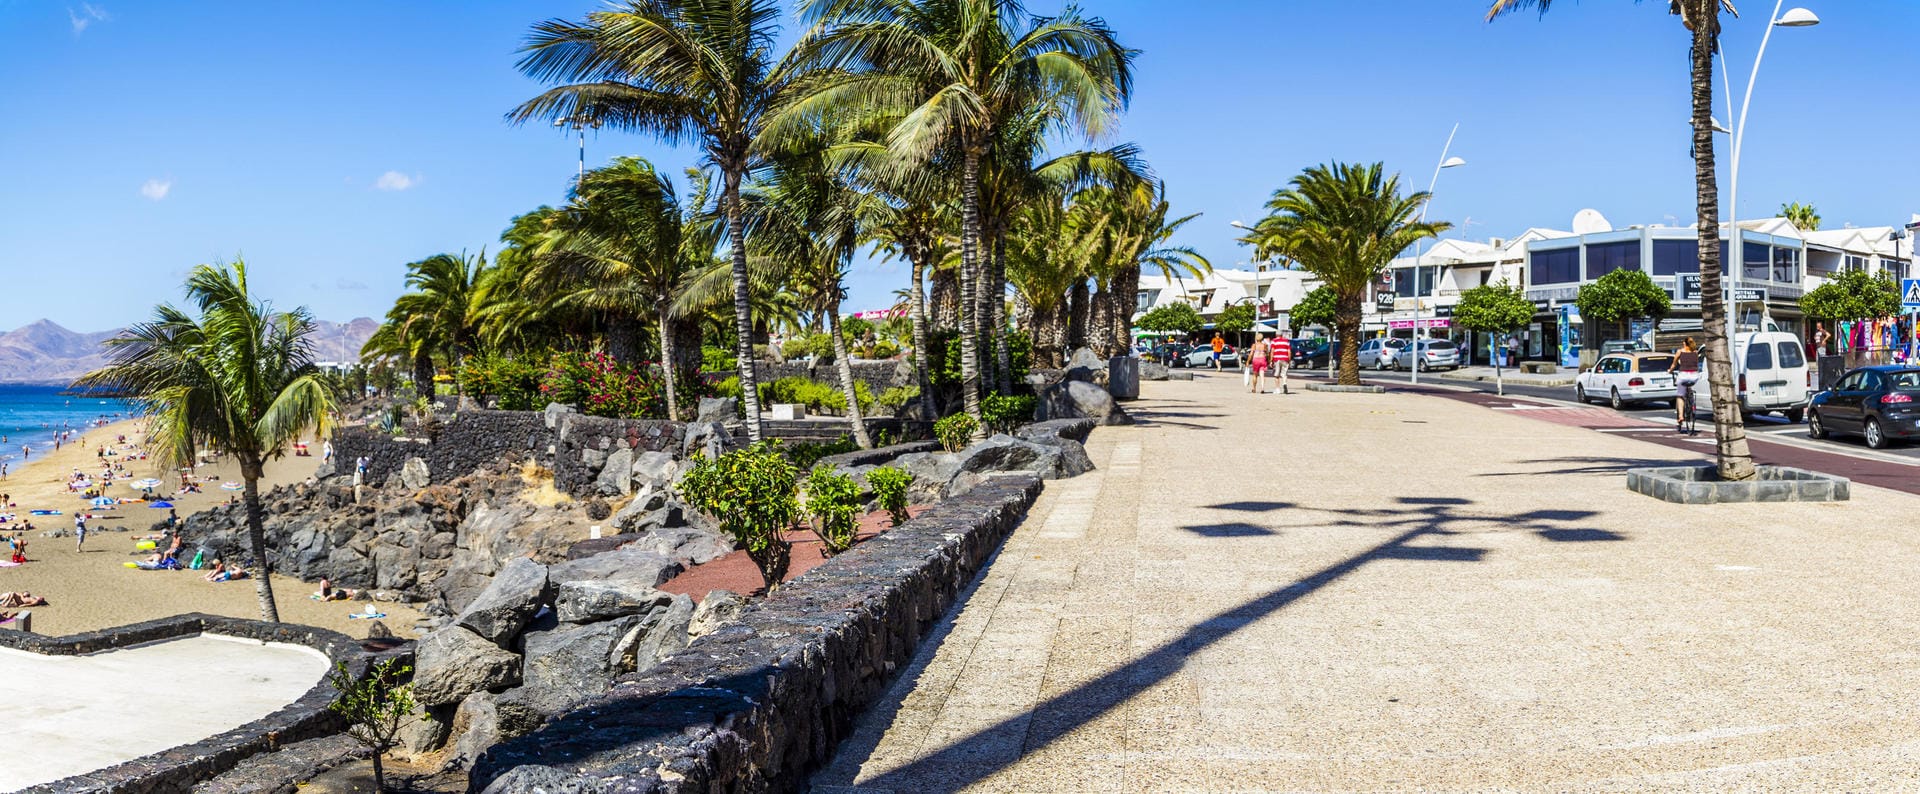 Lanzarotes Promenade wird derzeit erweitert und bietet direkten Zugang zum Hafen, sowie zum Flughafen.